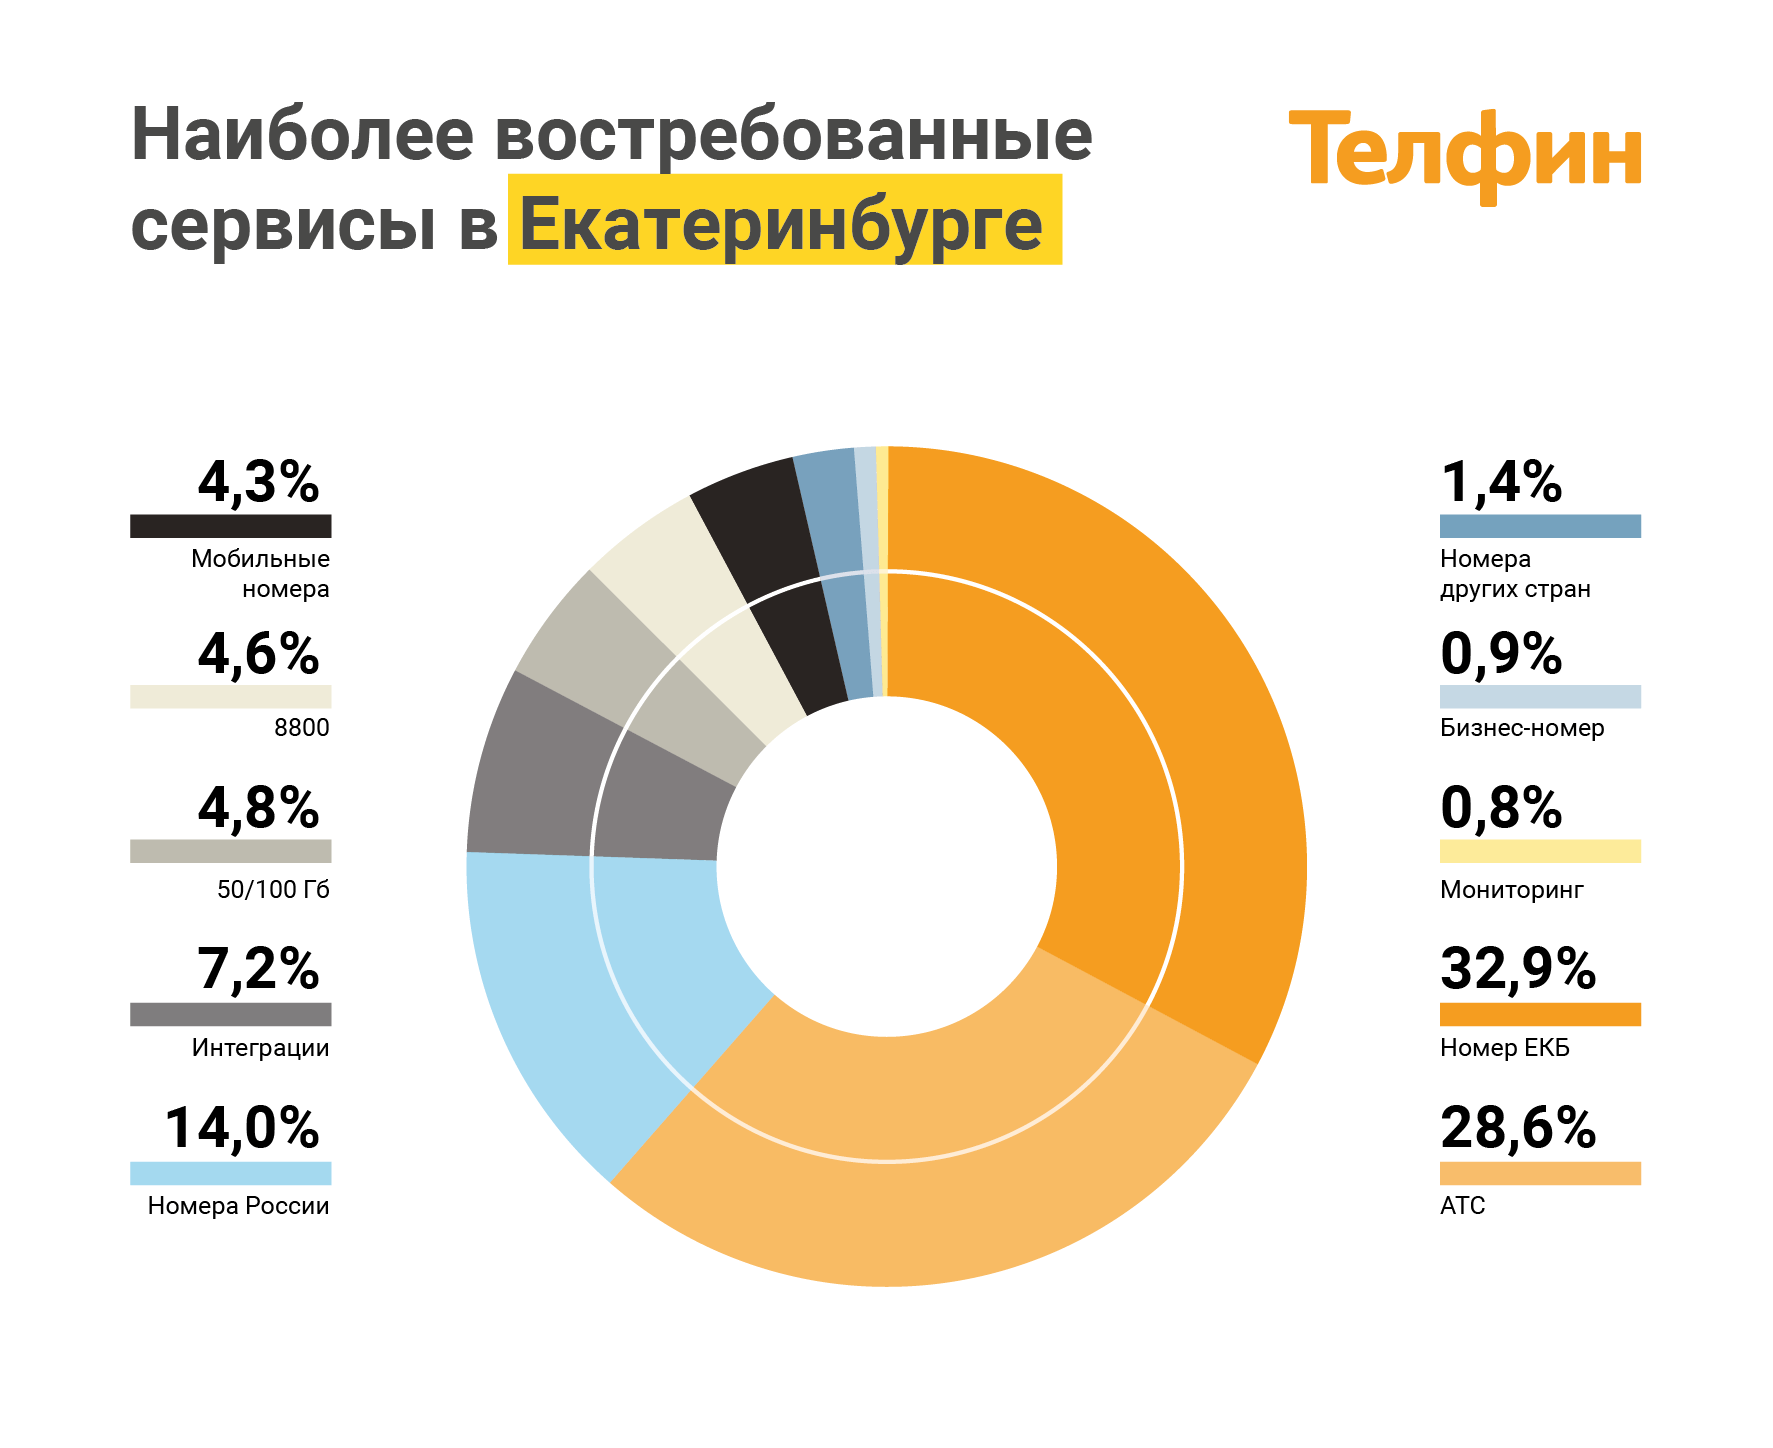 Наиболее востребованные сервисы ip-телефонии в Екатеринбурге